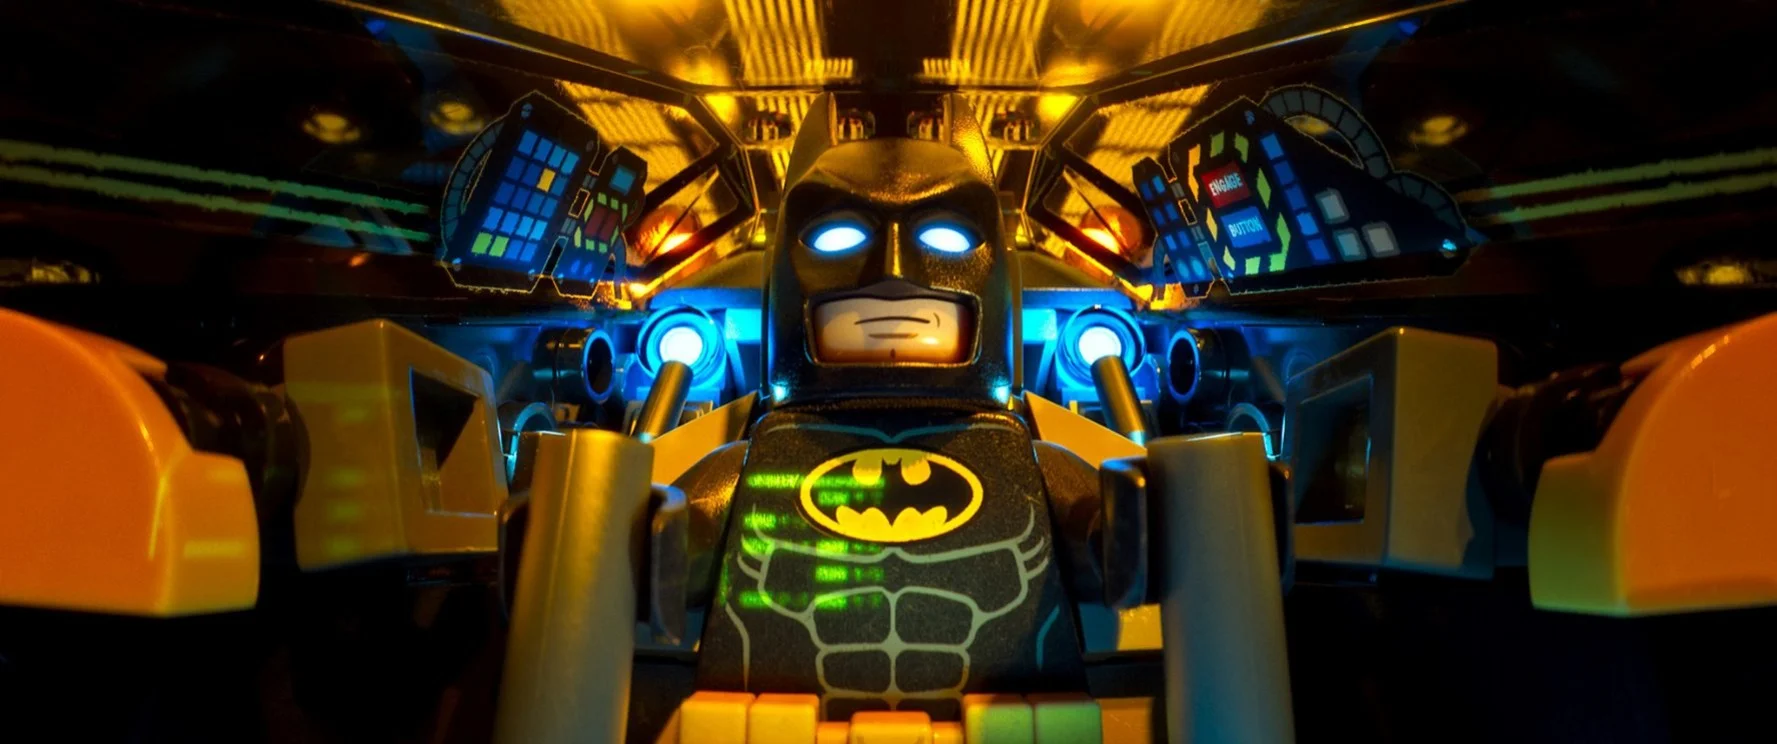 Иди сюда, Готэм... Обзор «Лего Фильм: Бэтмен» - изображение обложка